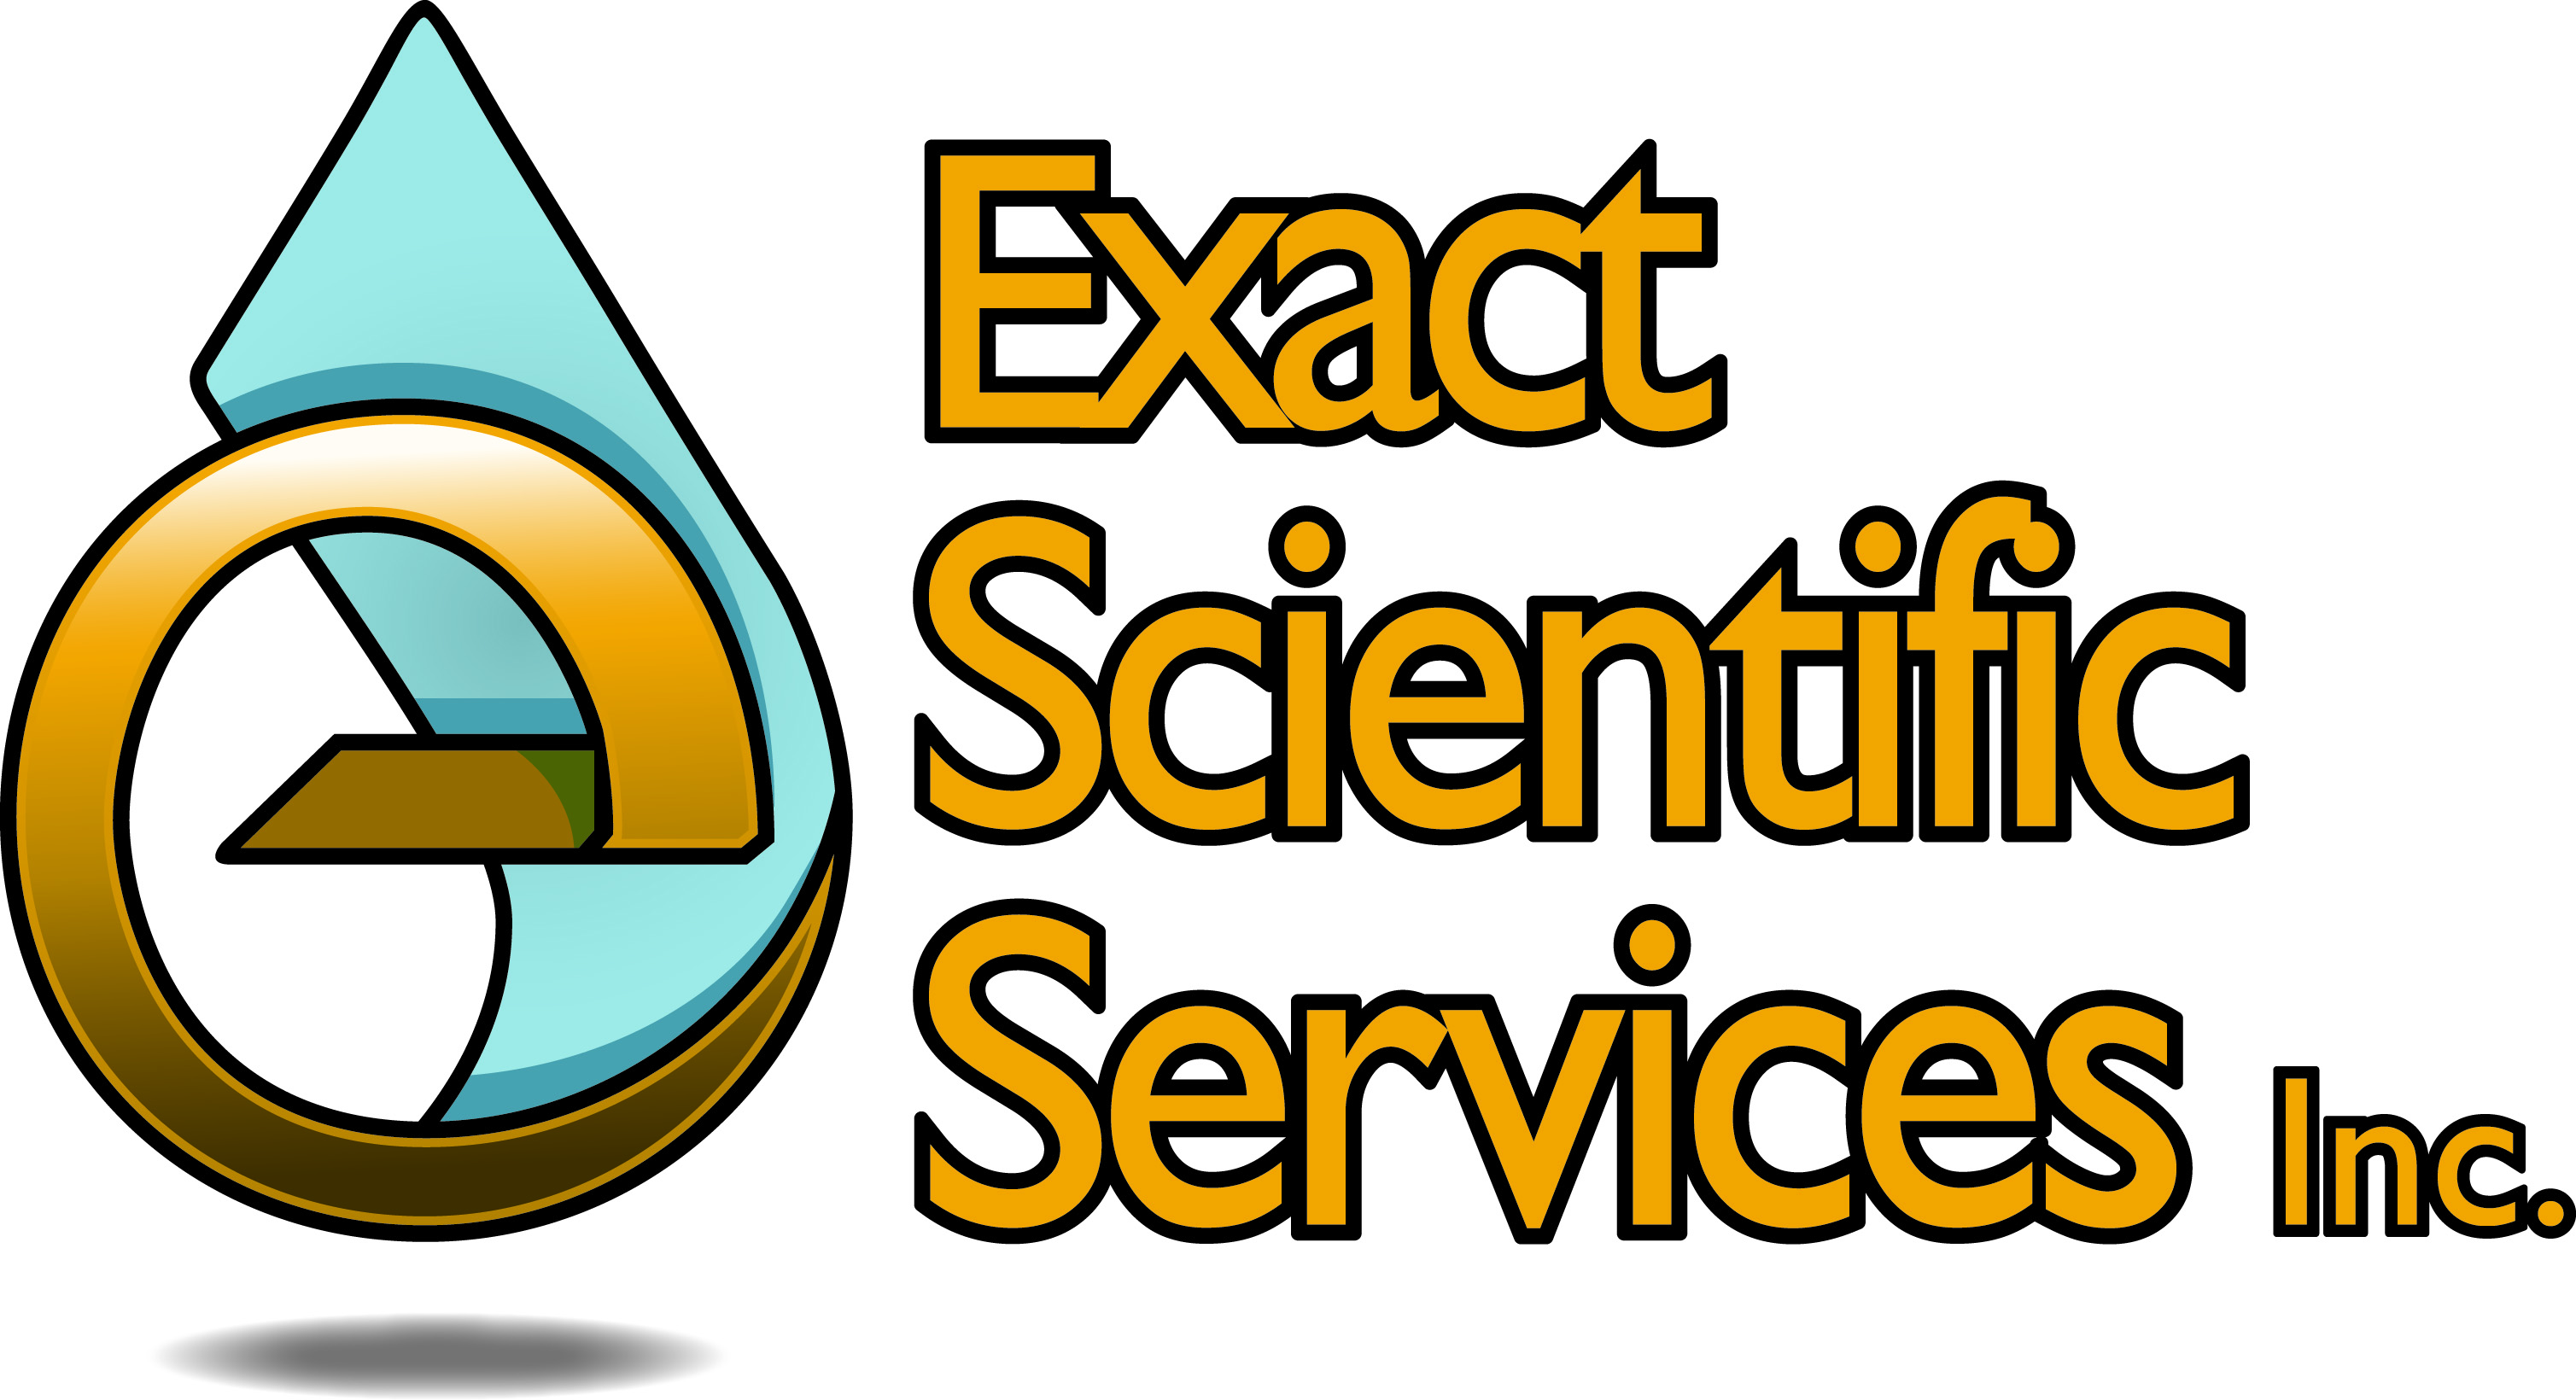 Exact Scientific Services, Inc. - 